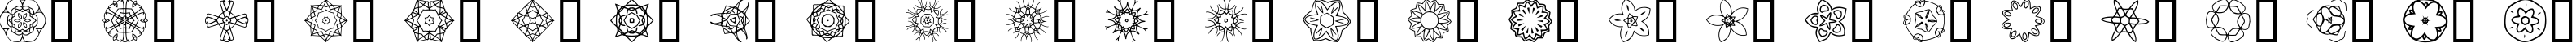 Пример написания английского алфавита шрифтом JI Kaleidoscope Bats 2